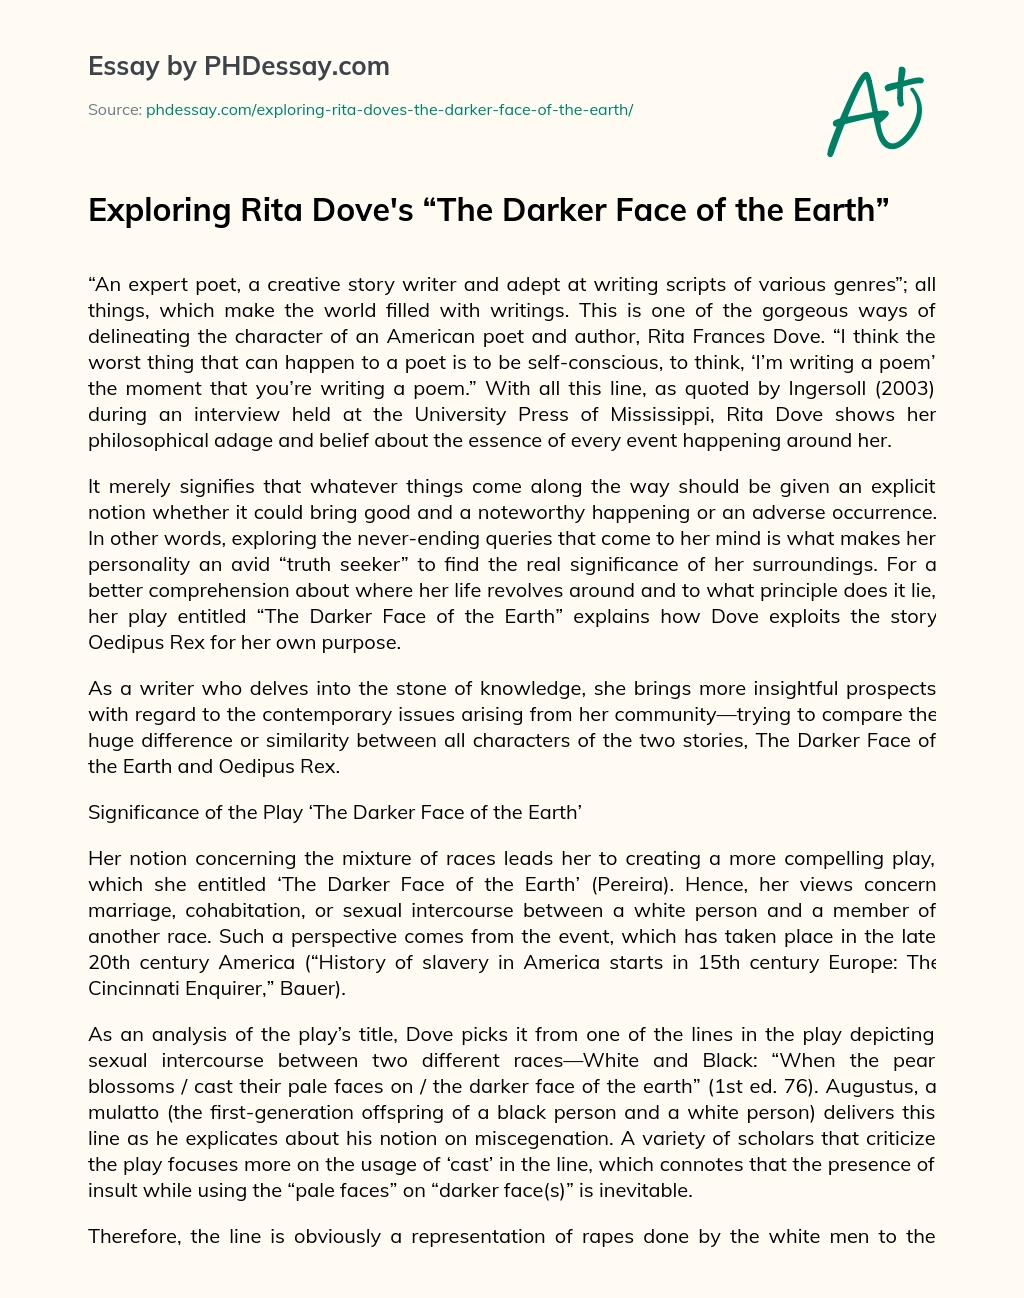 Exploring Rita Dove’s “The Darker Face of the Earth” essay